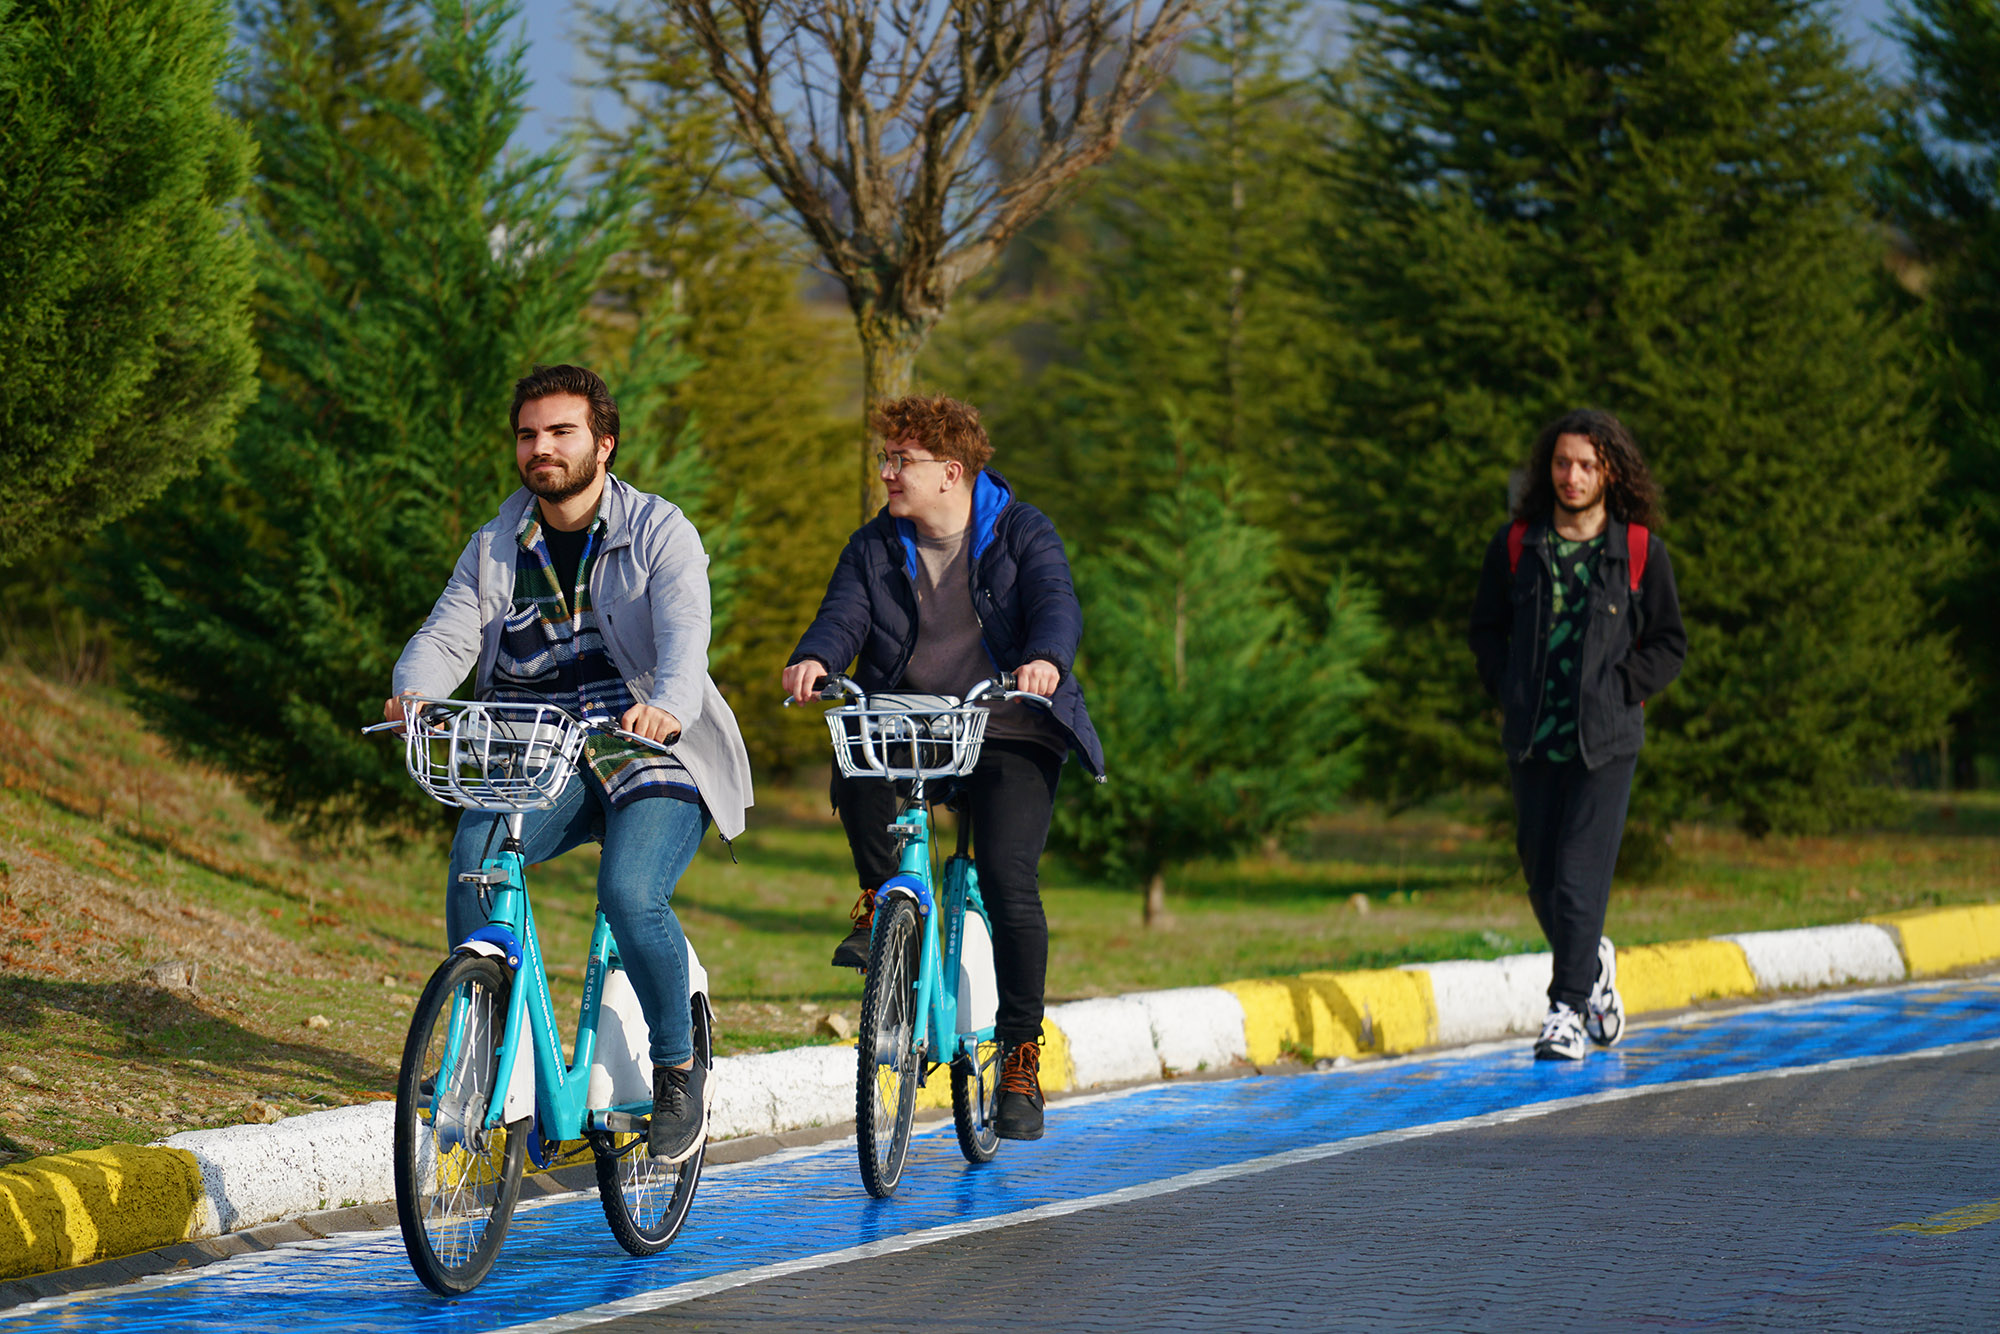 Sakaryalının bisiklet sevgisi Büyükşehir’e ilham olacak